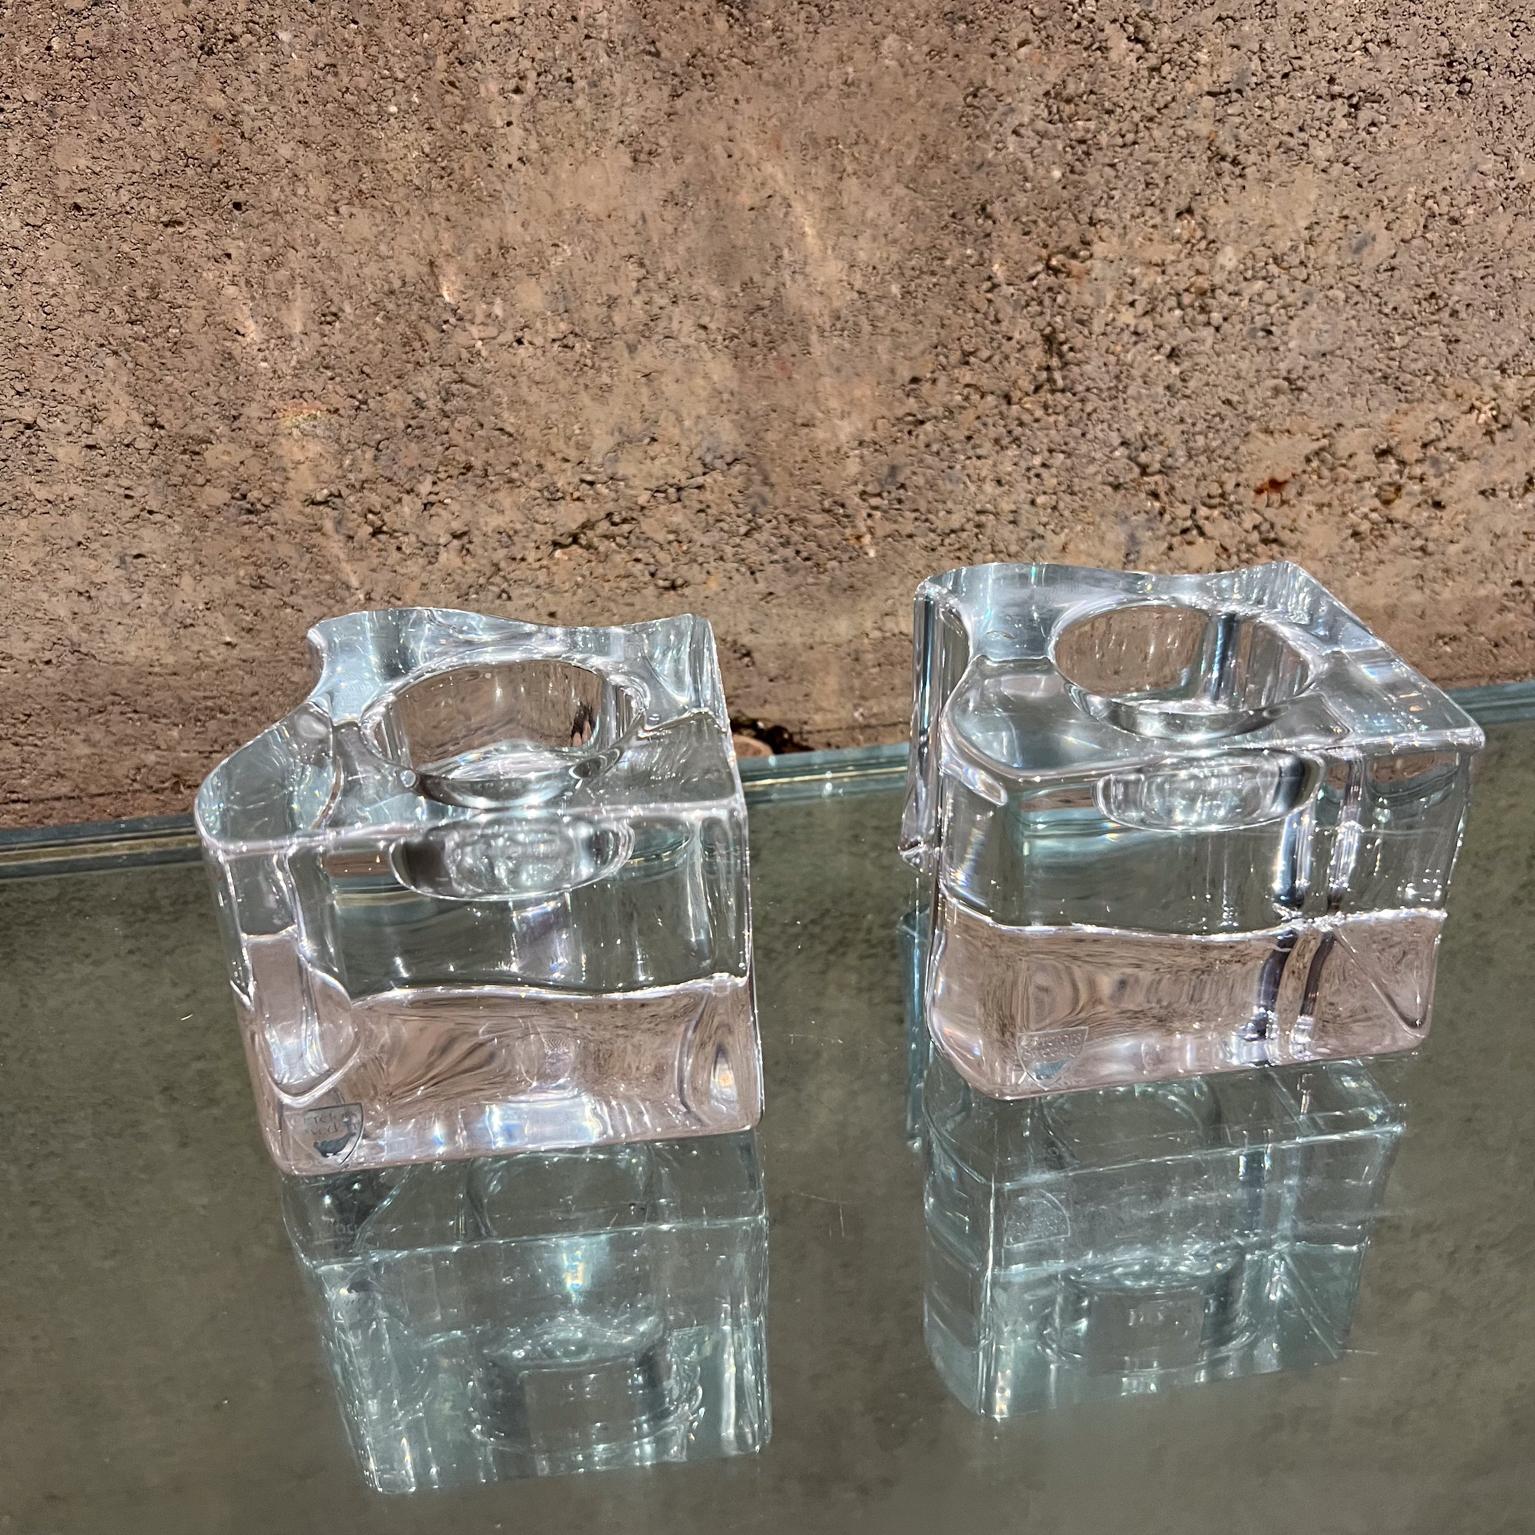 
1960er Jahre Paar Orrefors Kerzenständer Quadratisches Kristallglas
2,5 h x 3,13 x 2,88
Preowned Vintage unrestauriert Zustand, siehe Bilder zur Verfügung gestellt.